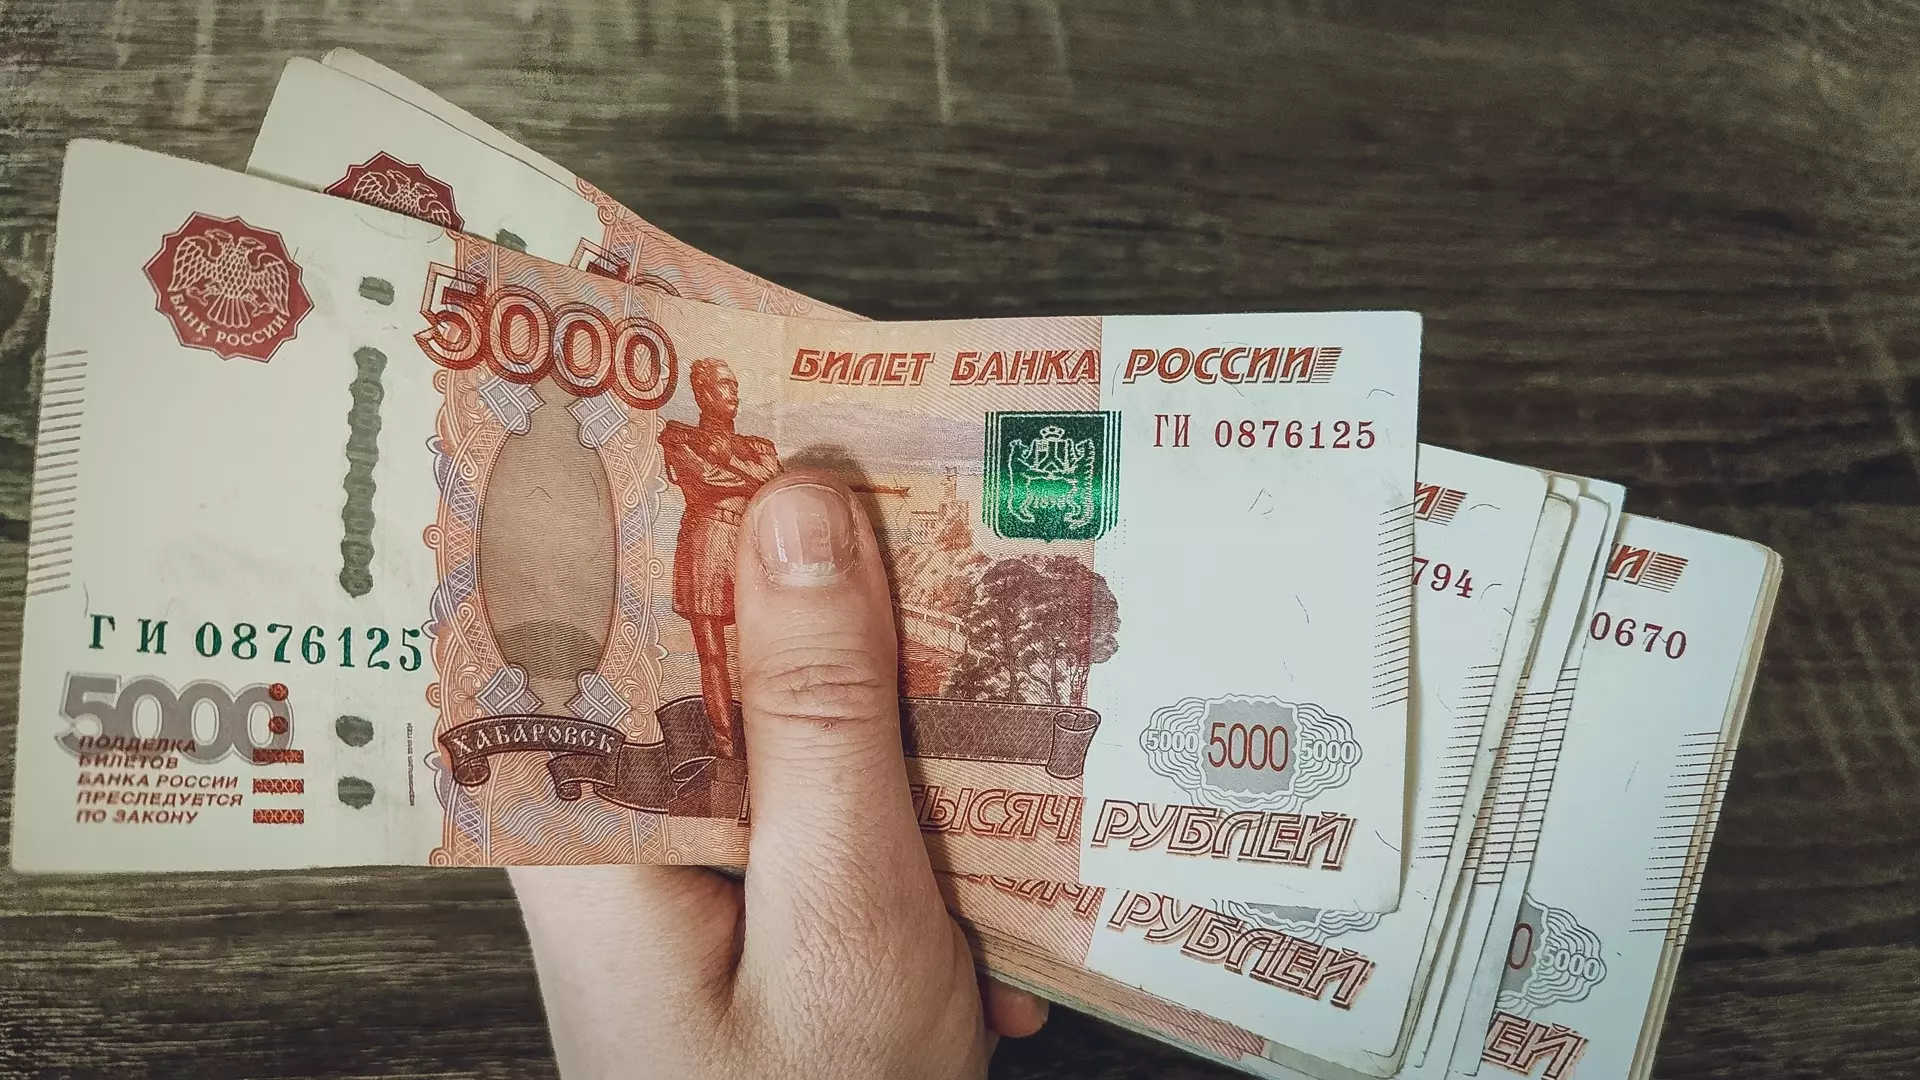 Нижегородский строитель выиграл в лотерею 3 млн рублей